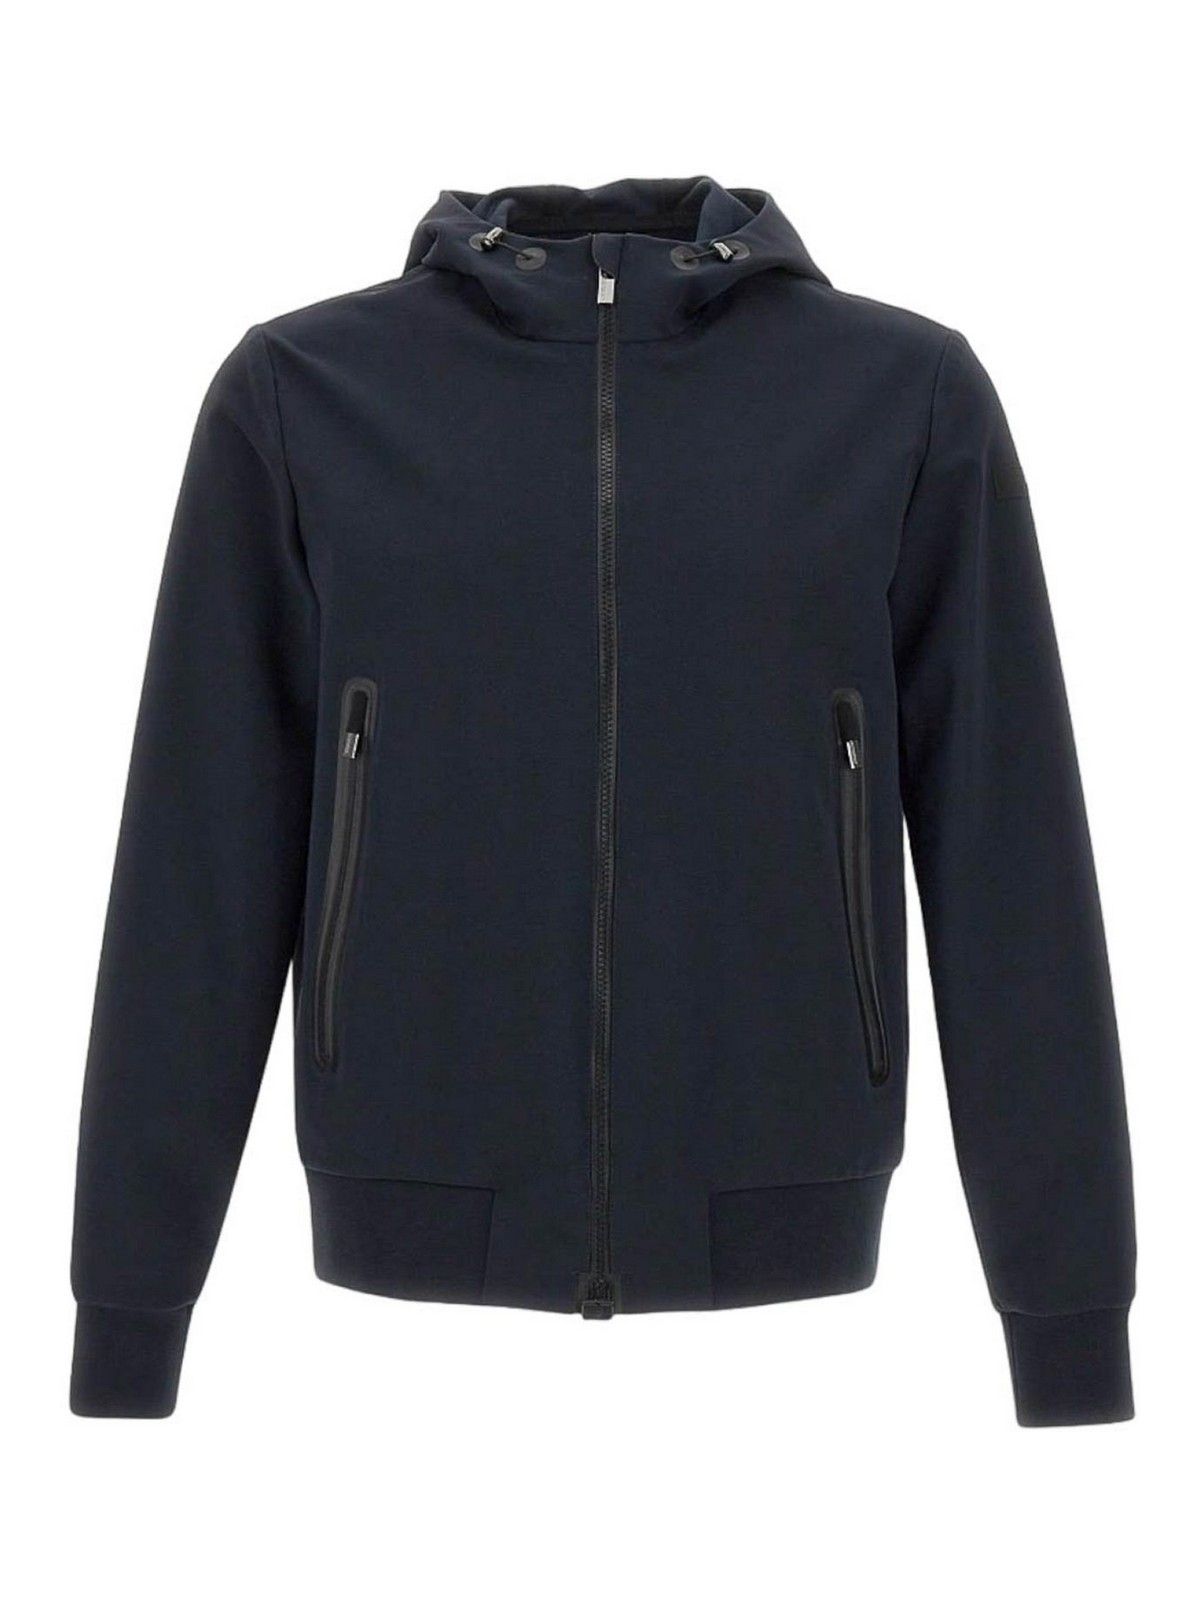 Casual jackets RRD Roberto Ricci Designs - Jkt summer hood - SES00160